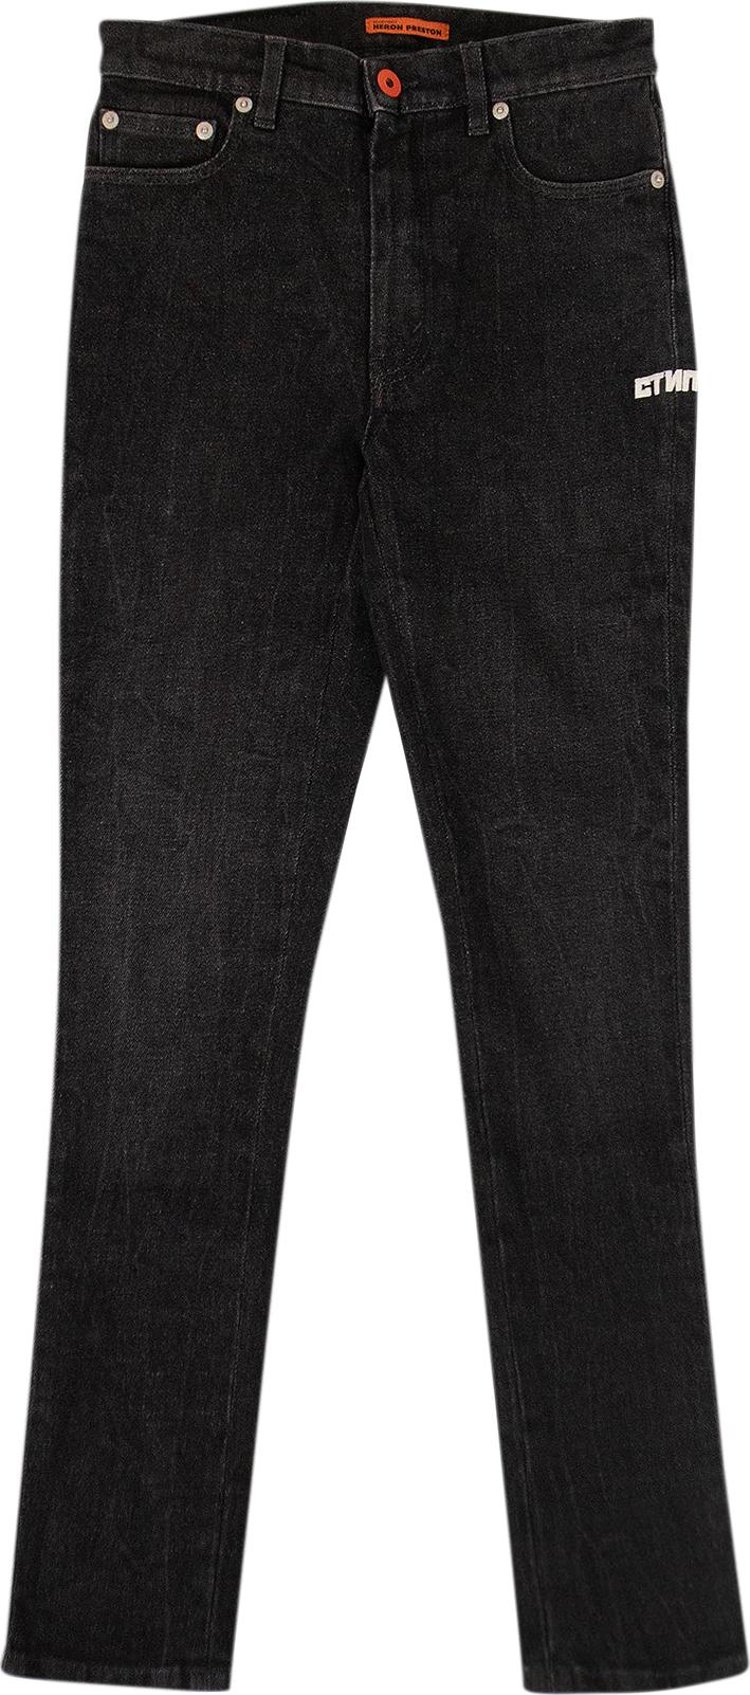 Heron Preston Washed Denim 5 Pocket Jeans 'Black'